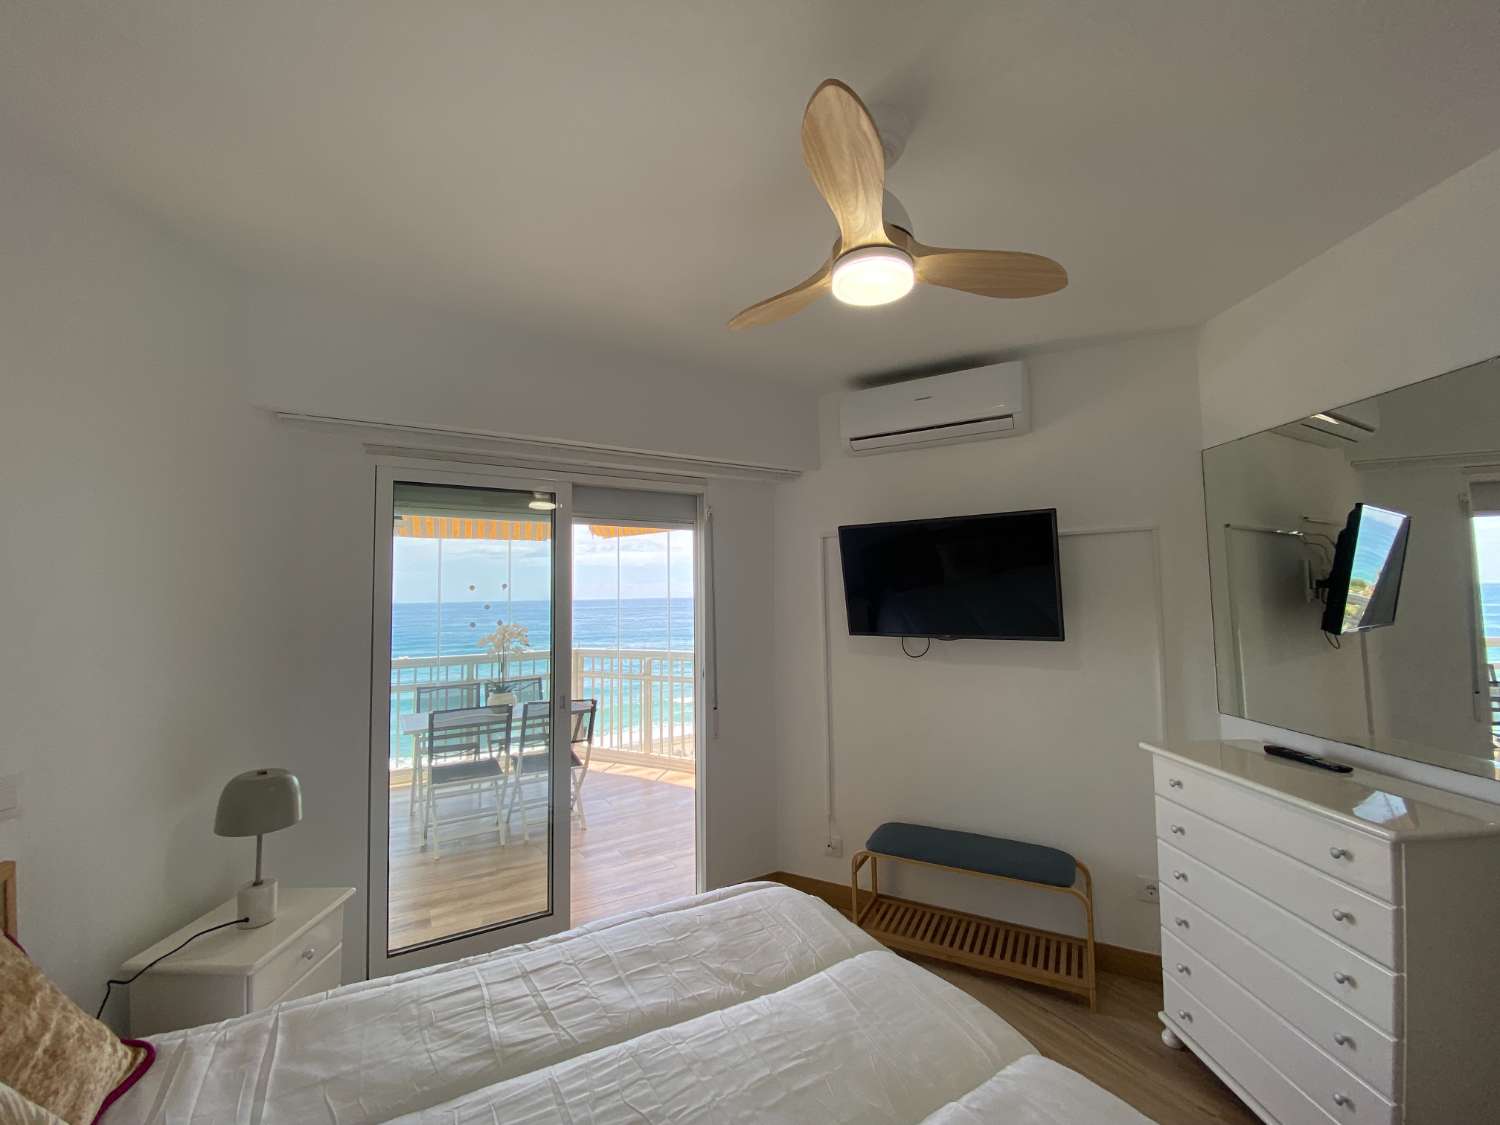 Increíble apartamento reformado con vistas panorámicas al mar: ¡El hogar perfecto para los amantes de la playa!"